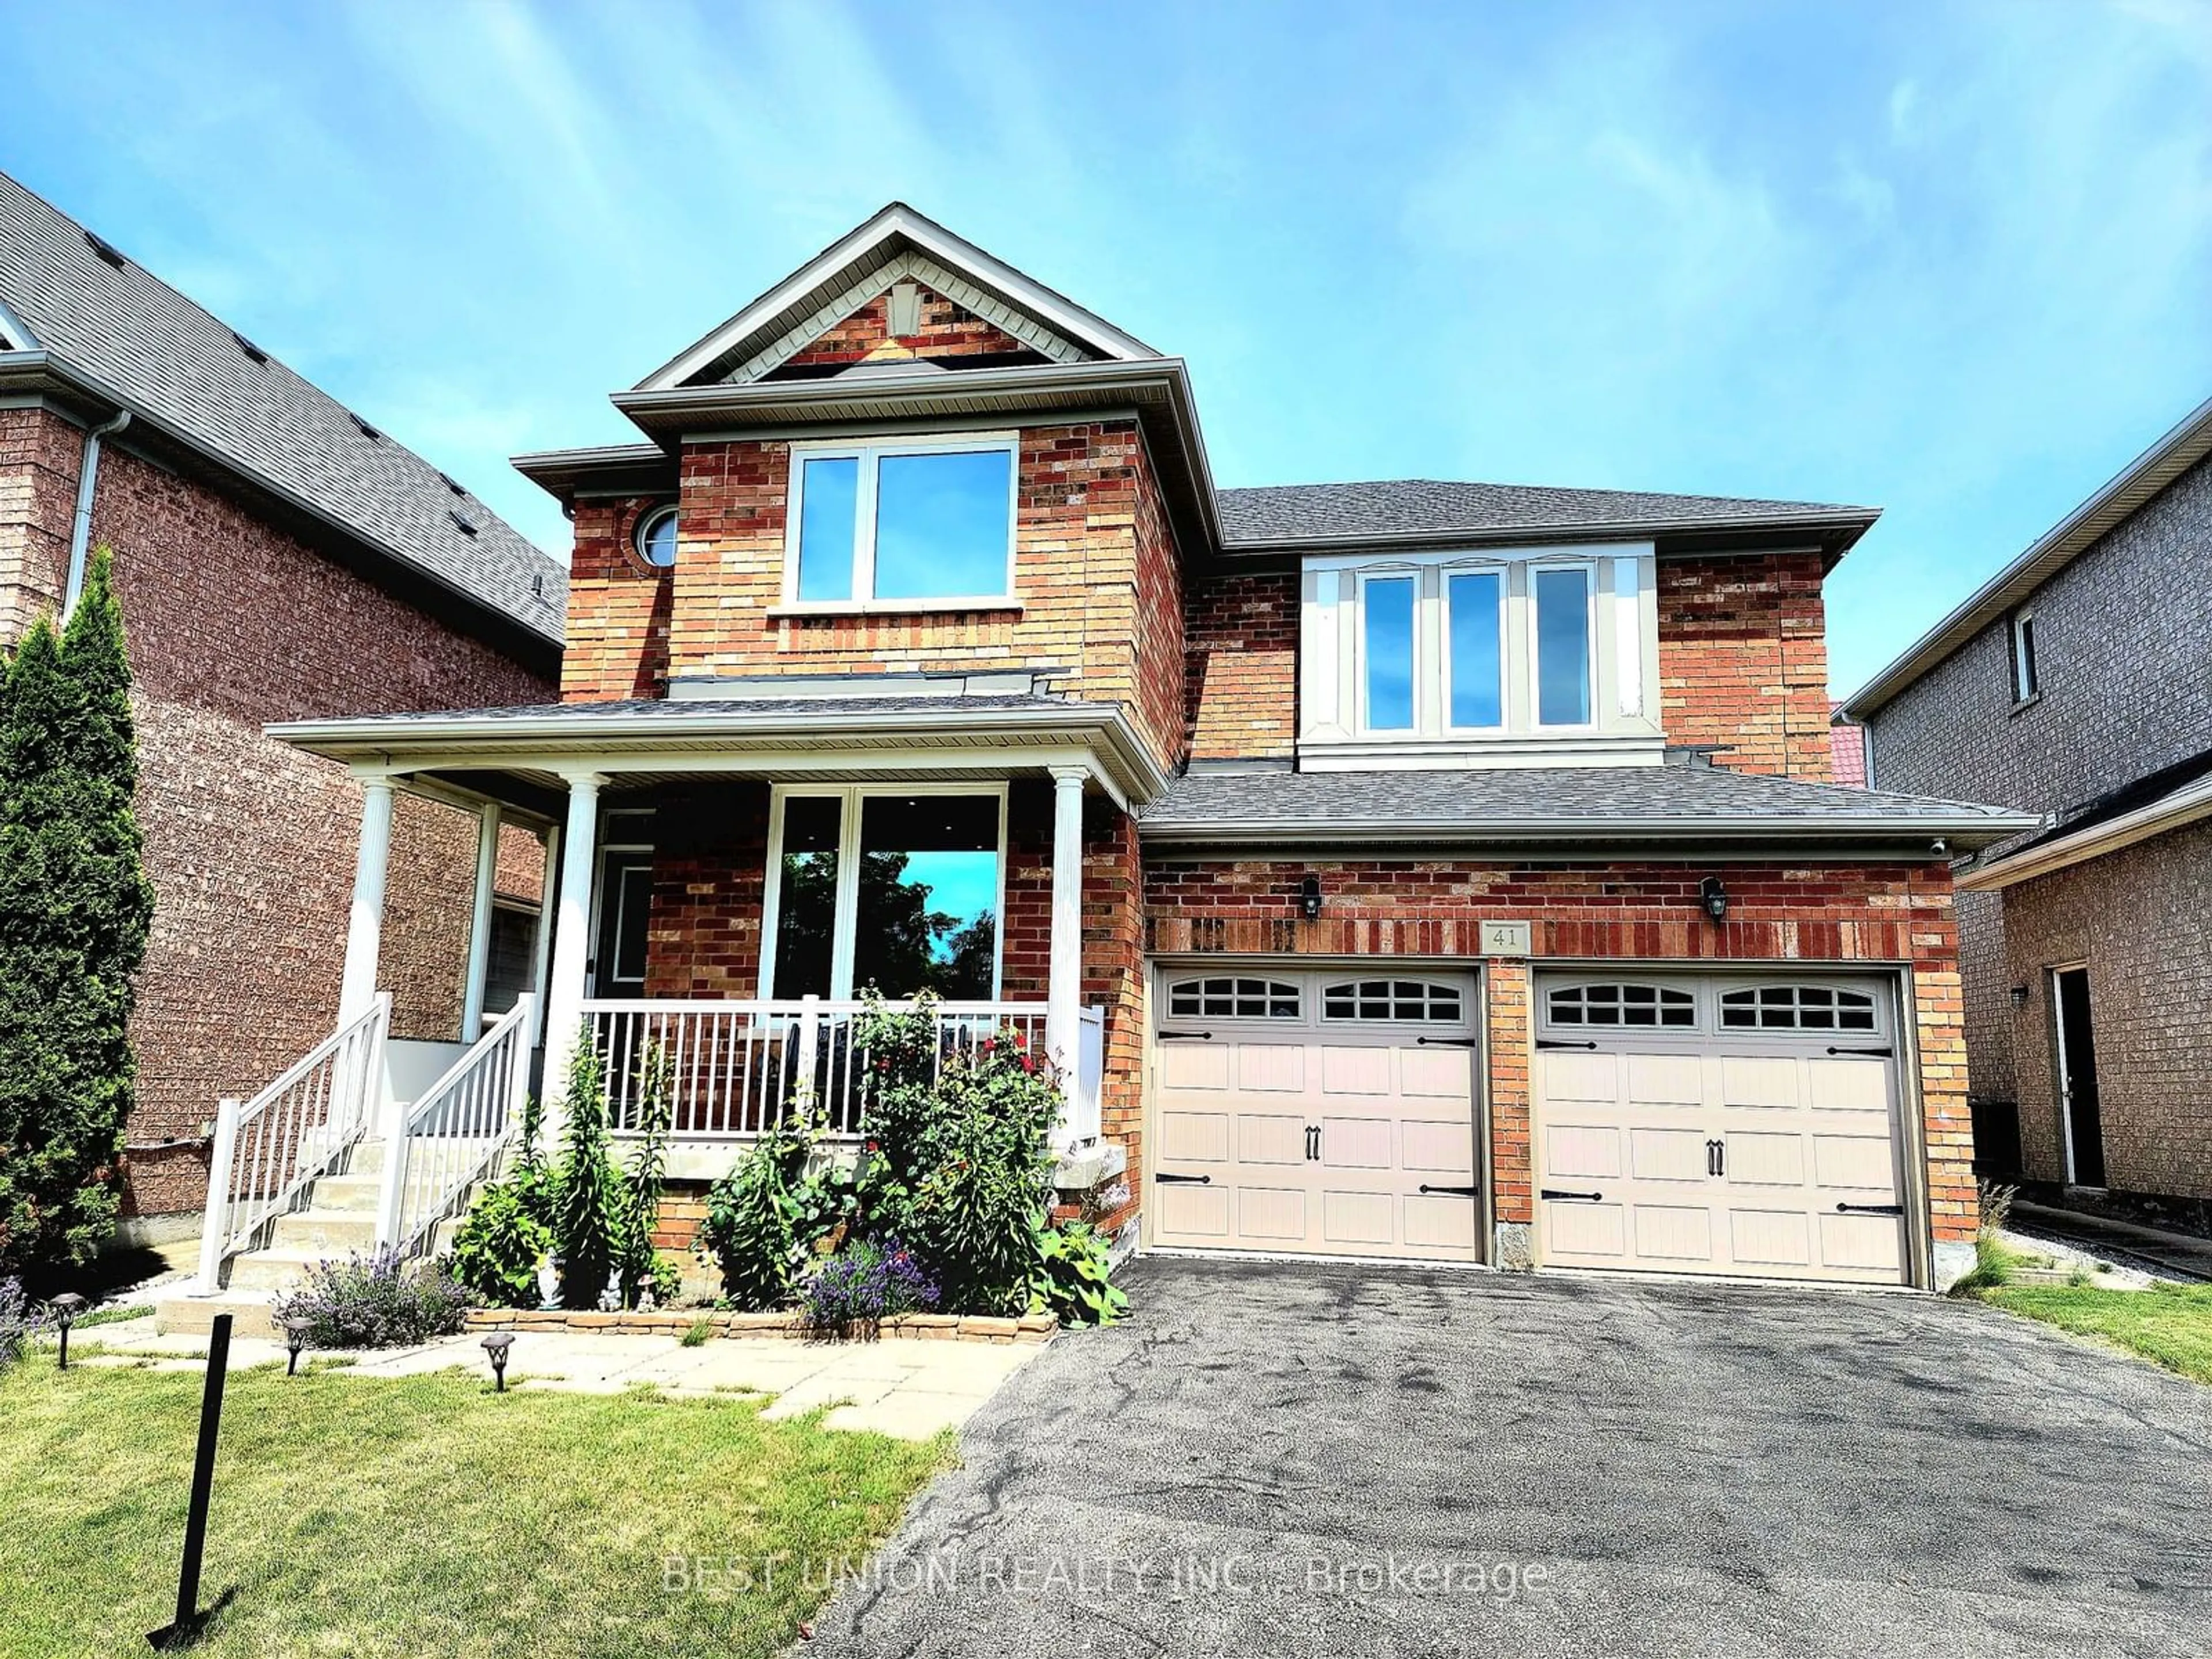 Home with brick exterior material for 41 Golden Meadow Dr, Markham Ontario L6E 1E4